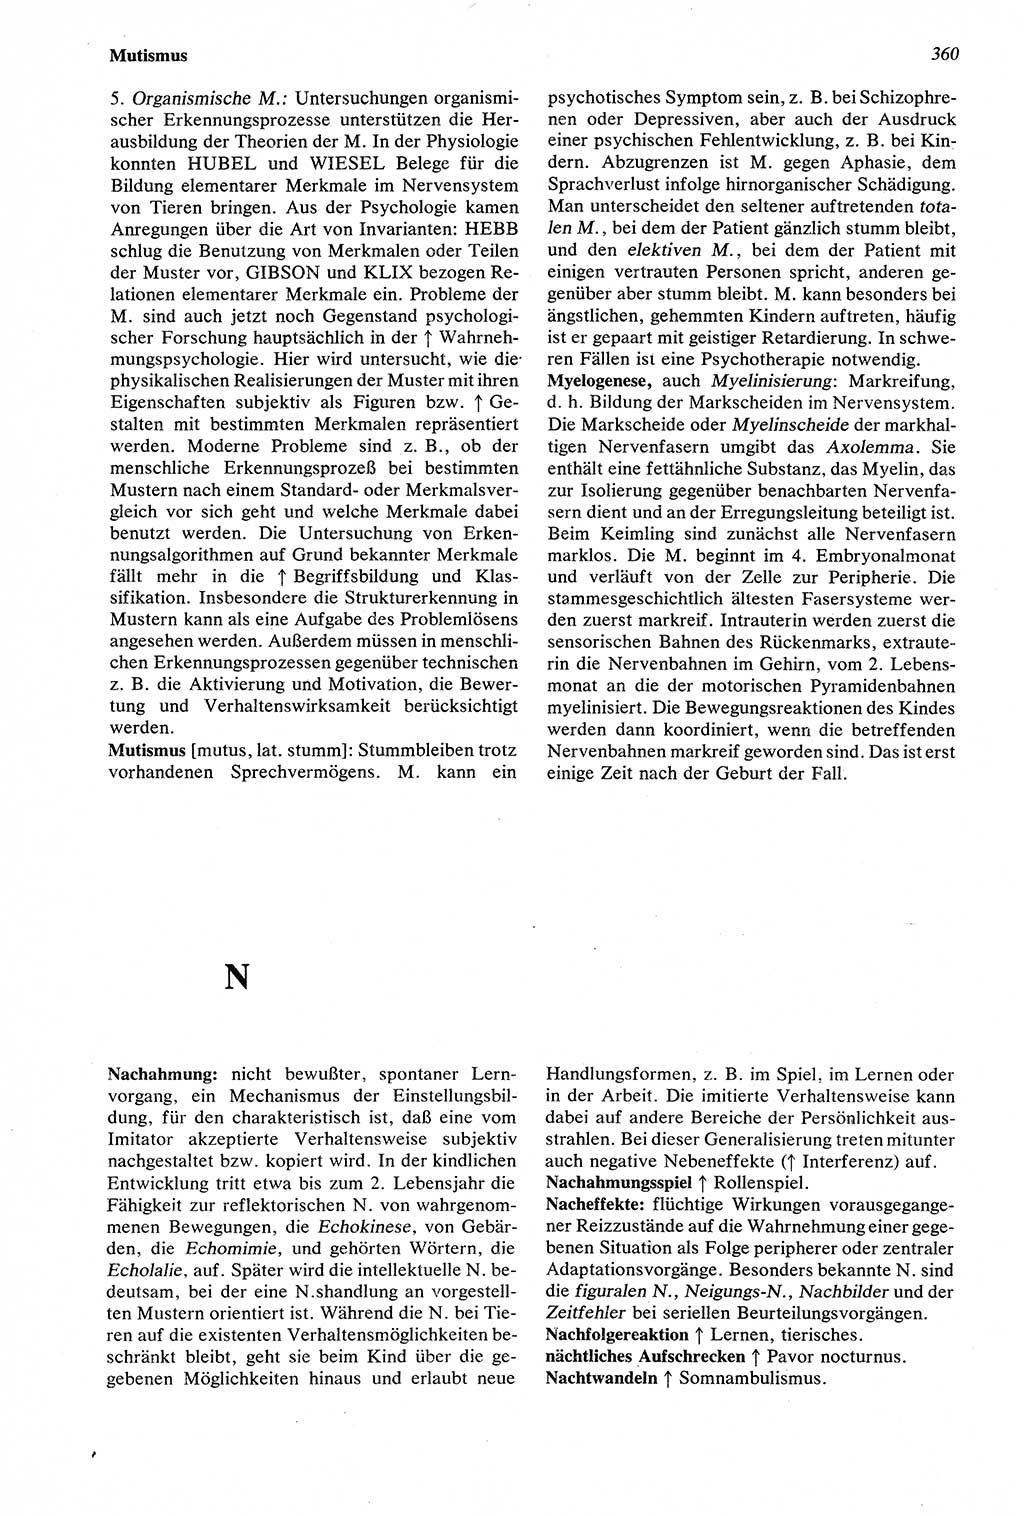 Wörterbuch der Psychologie [Deutsche Demokratische Republik (DDR)] 1976, Seite 360 (Wb. Psych. DDR 1976, S. 360)